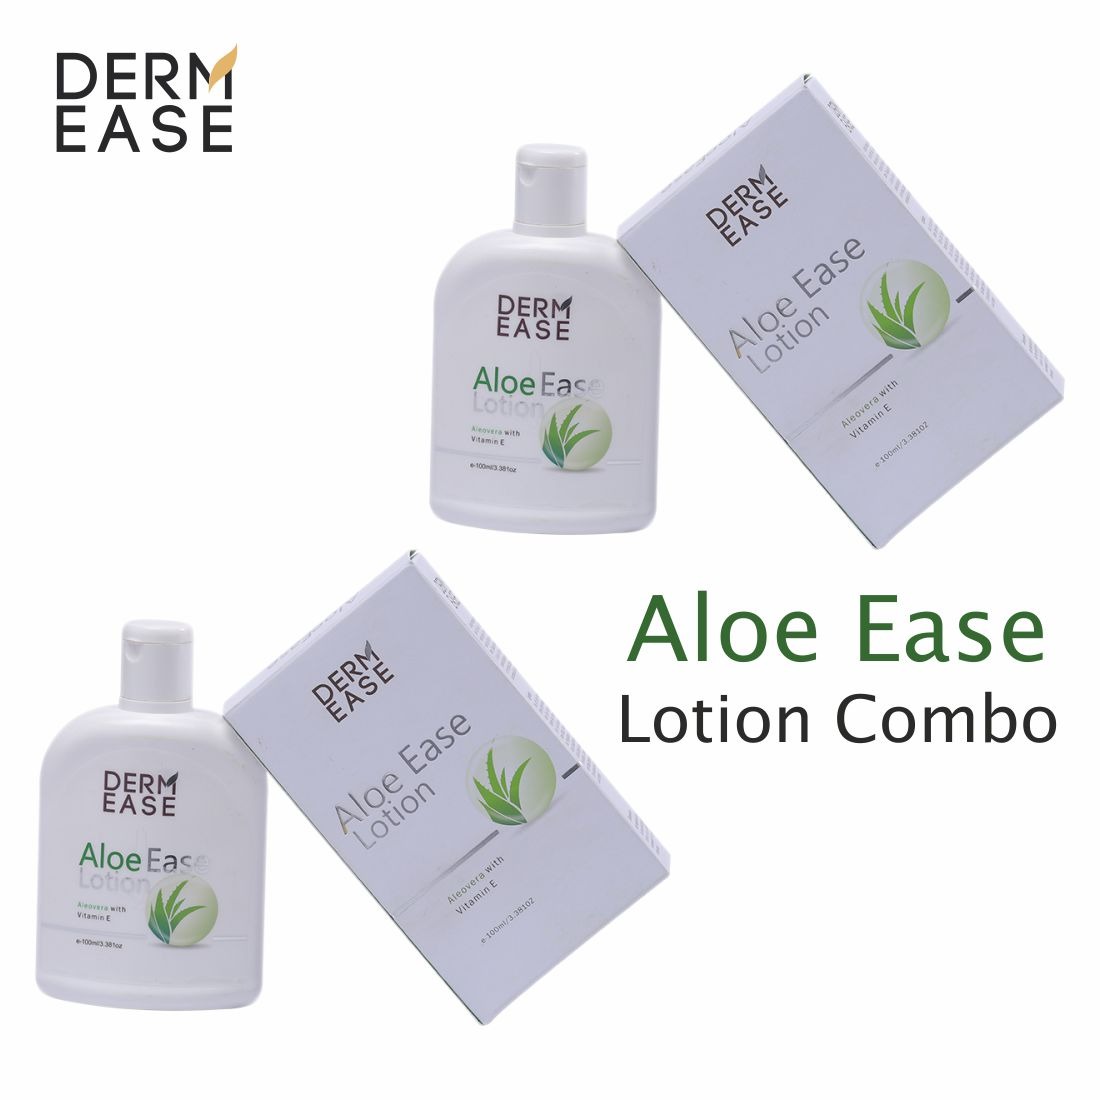 DERM EASE Aloe Ease Body Lotion Combo